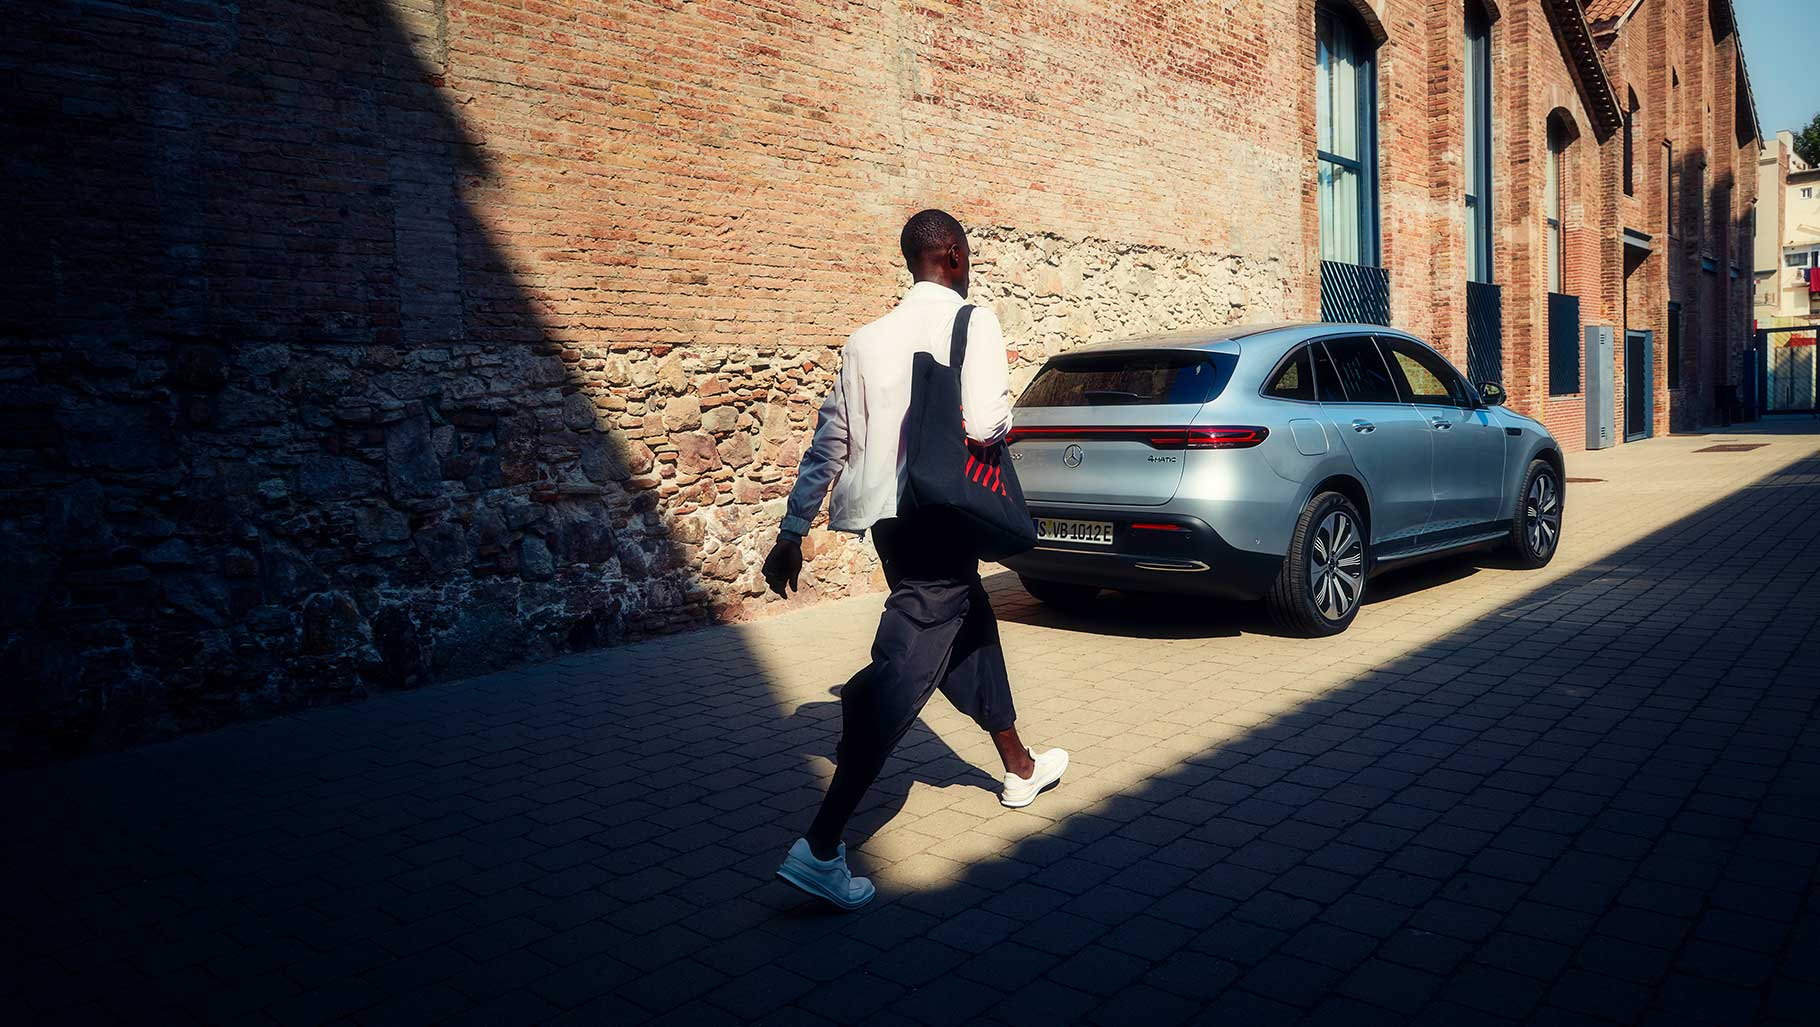 Ein junger Mann läuft an einer Häuserwand entlang, auf einen Mercedes zu.